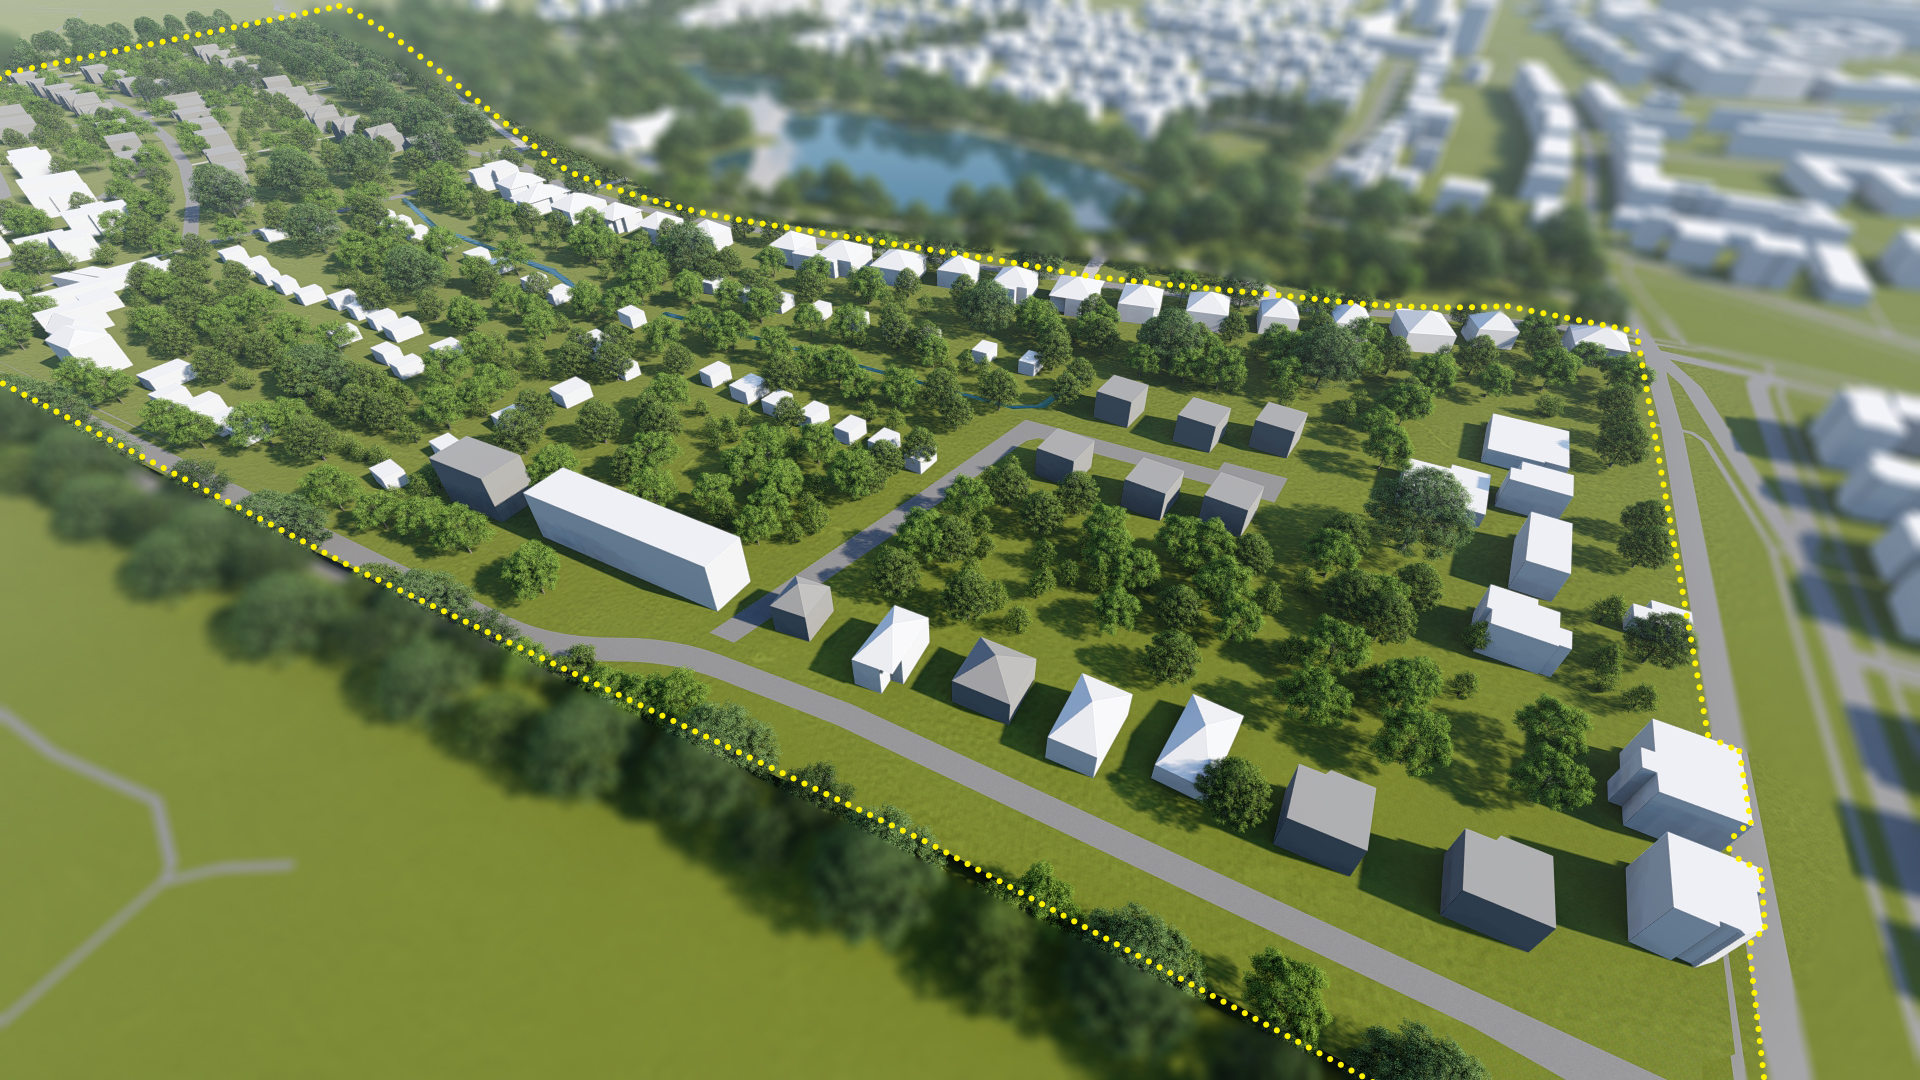 Wizualizacja. Propozycja zagospodarowania terenu wg projektu planu miejscowego. Model terenu przedstawiający Park Sołacki z projektowanymi skwerami, istniejące i projektowane budynki oraz układ komunikacyjny.